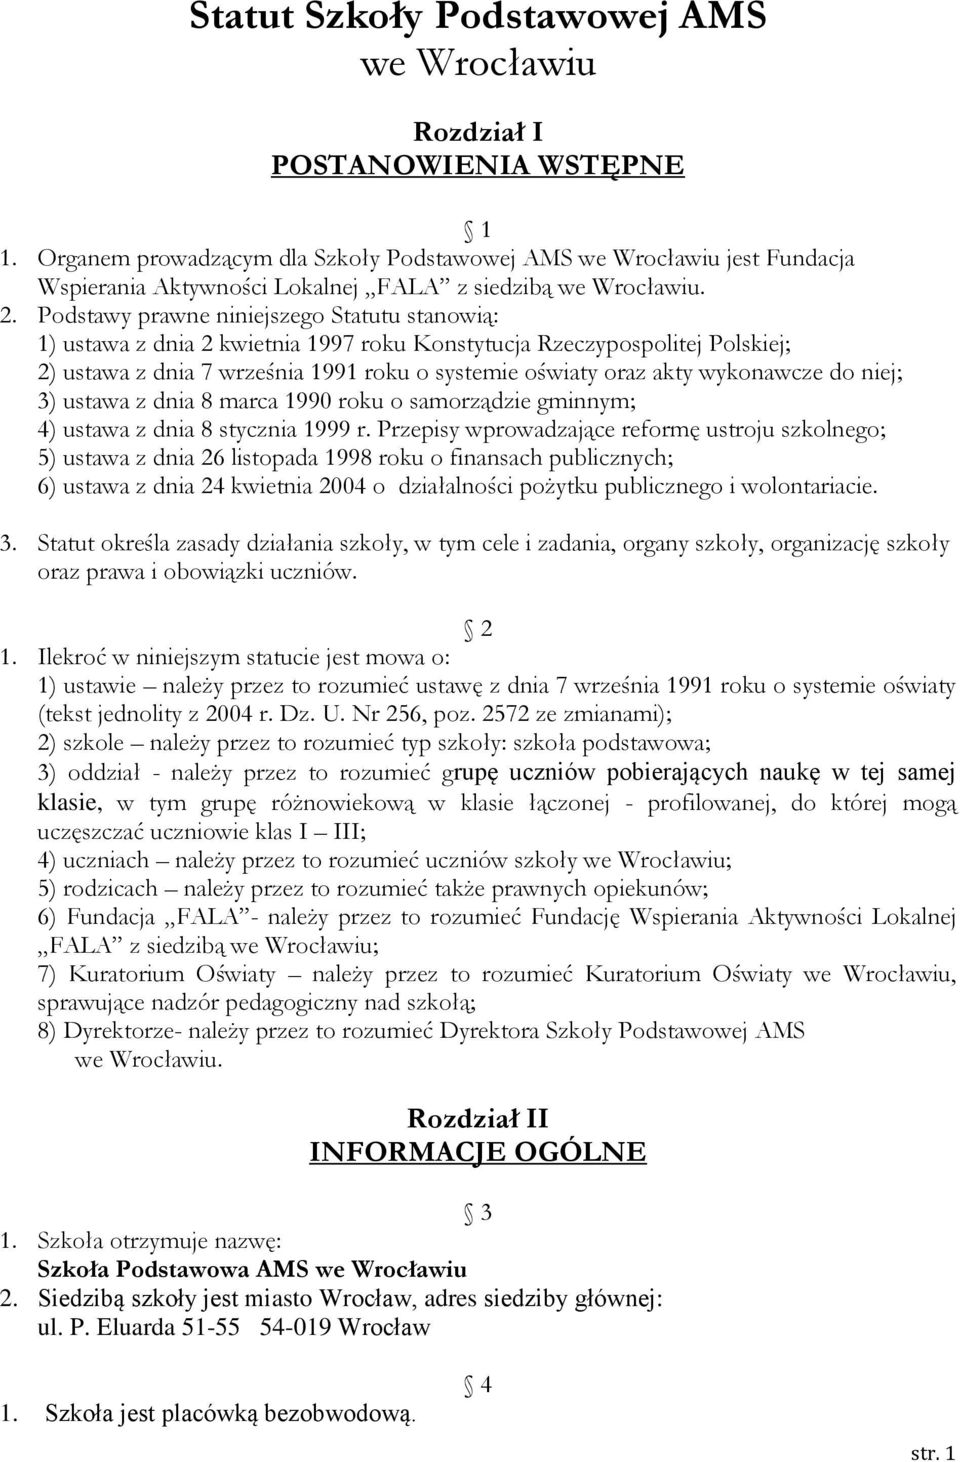 Podstawy prawne niniejszego Statutu stanowią: 1) ustawa z dnia 2 kwietnia 1997 roku Konstytucja Rzeczypospolitej Polskiej; 2) ustawa z dnia 7 września 1991 roku o systemie oświaty oraz akty